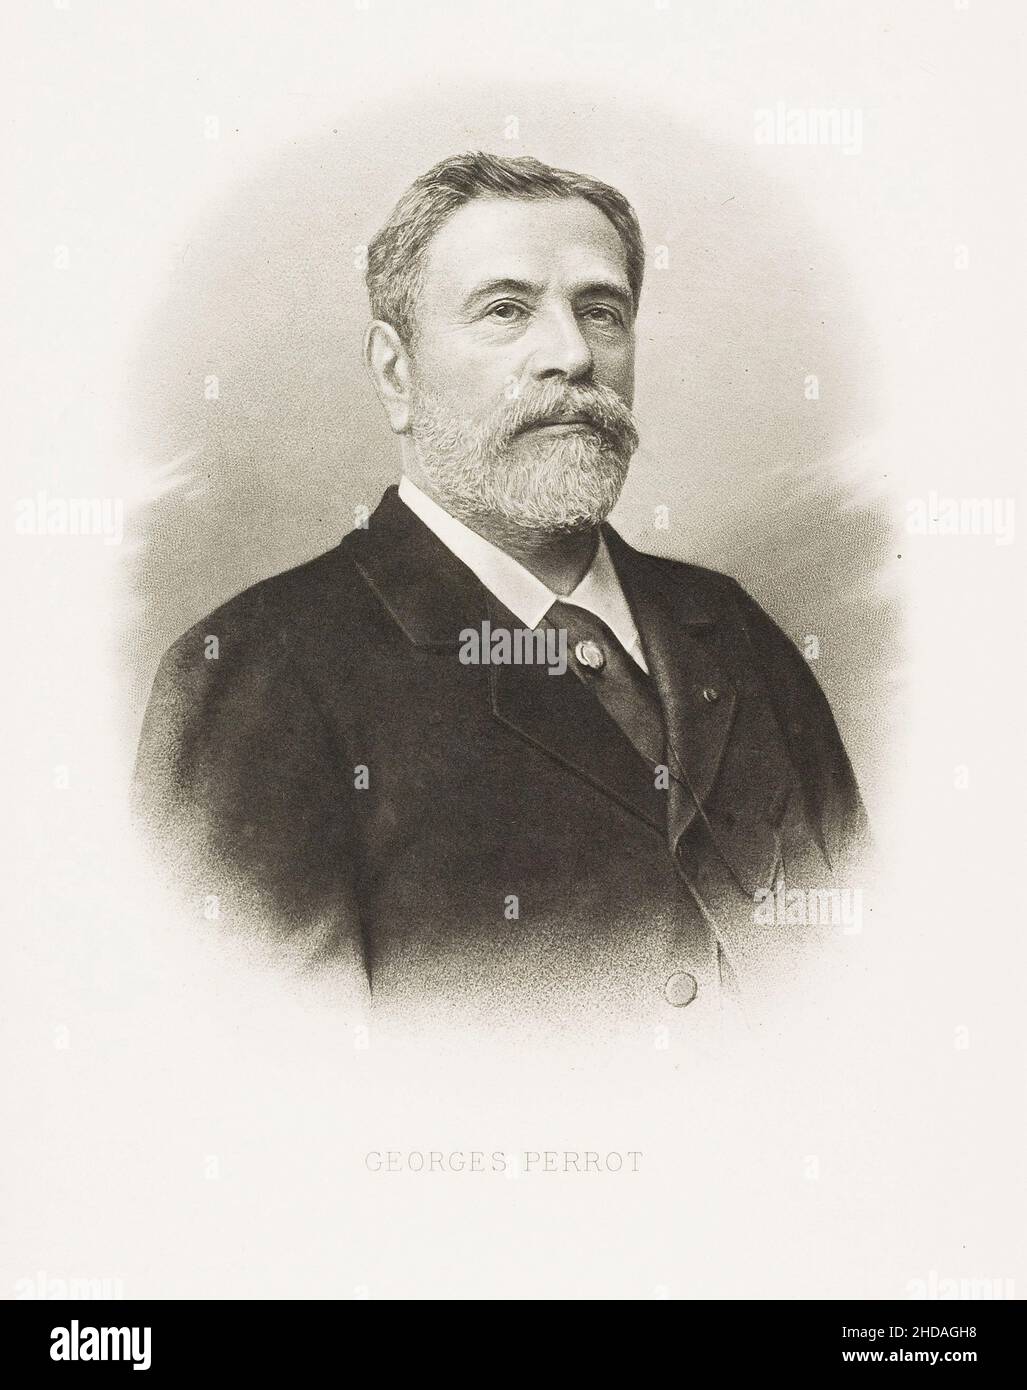 Il ritratto del 19th secolo di Georges Perrot di P. Dujardin. Georges Perrot (1832 – 1914) è stato un archeologo francese. Insegnò alla Sorbona dal 1 Foto Stock